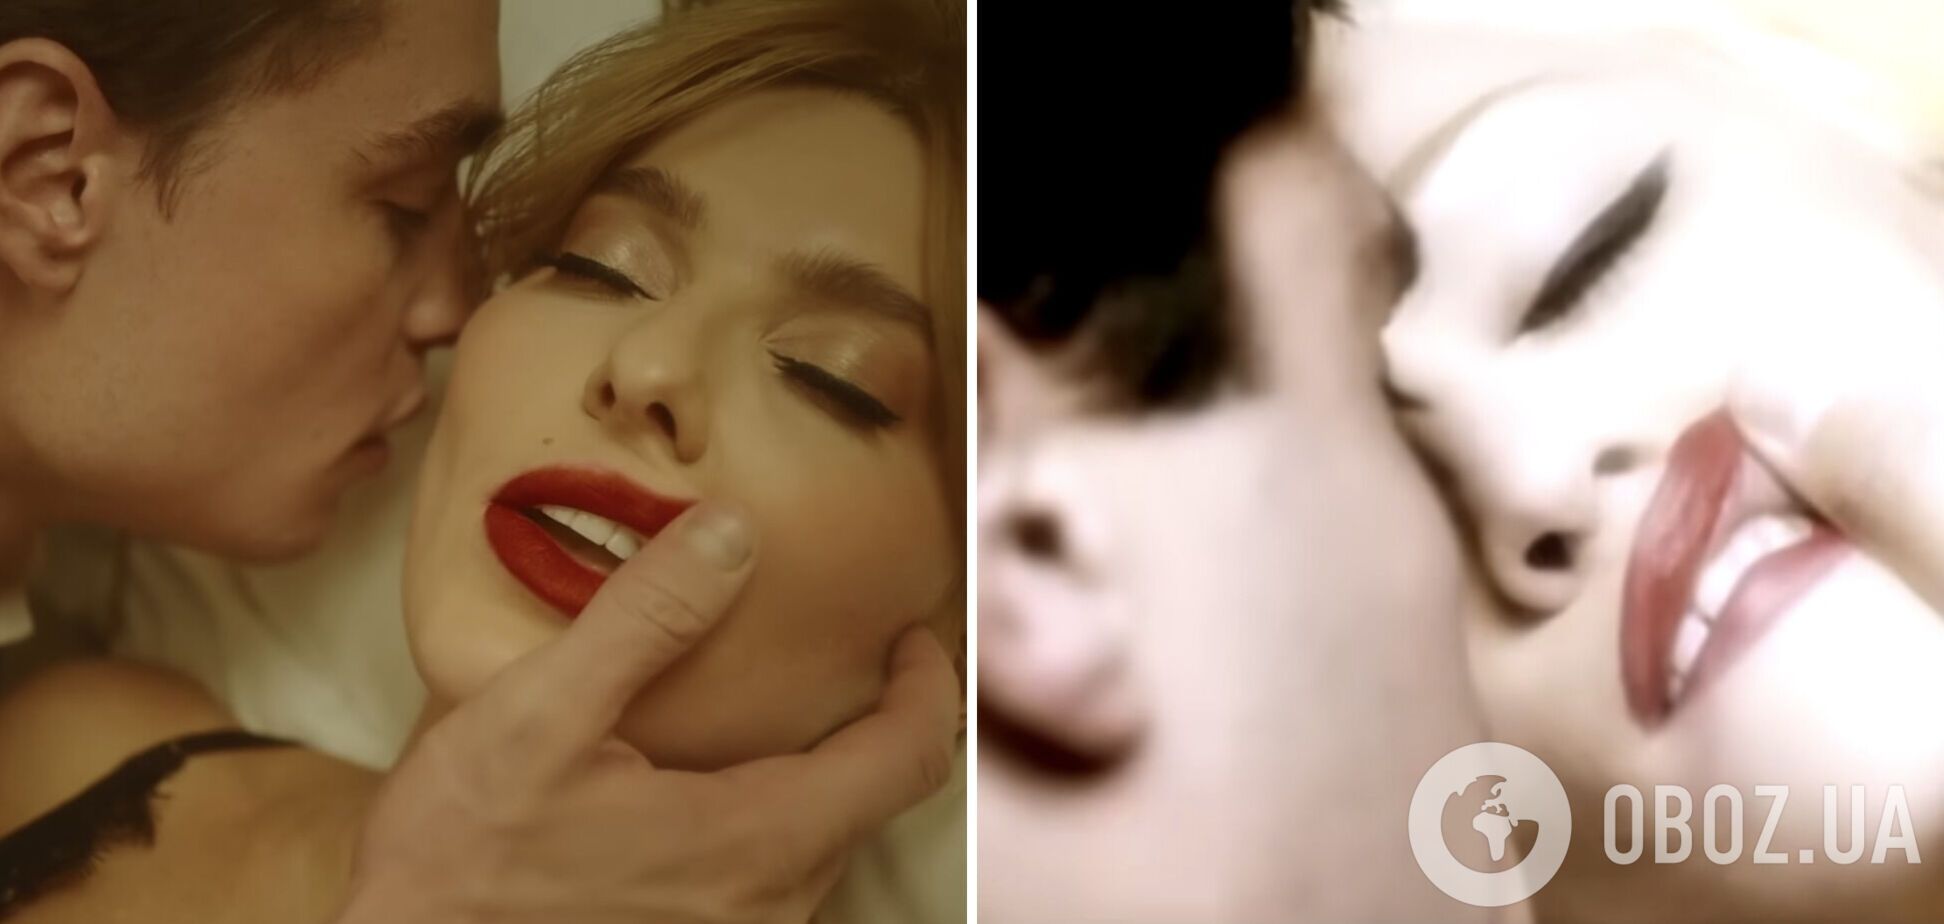 Украинскую певицу заподозрили в плагиате клипов Мадонны и Ланы Дель Рэй. Видео